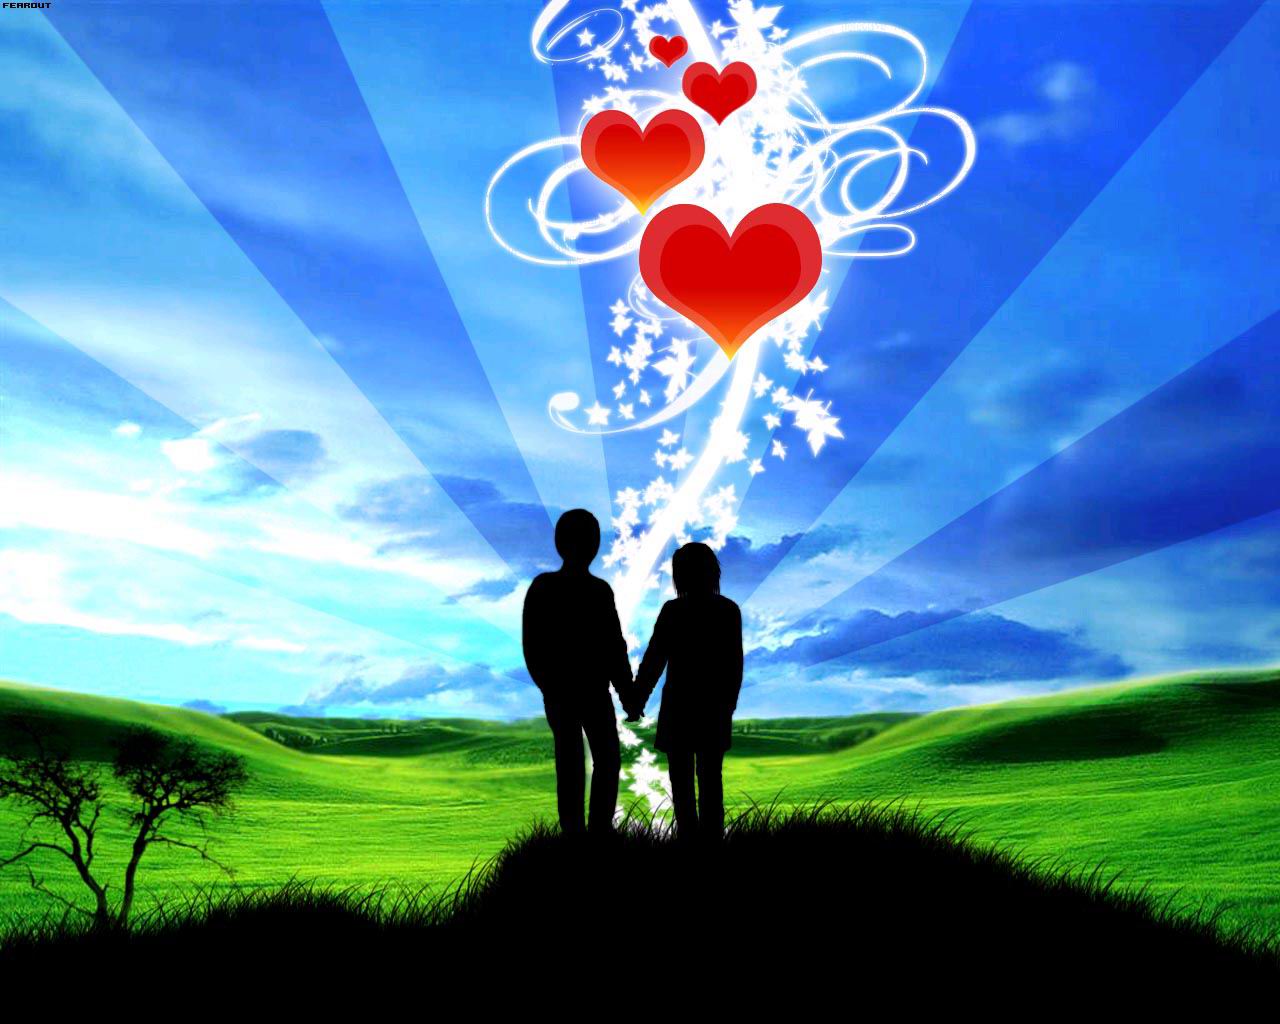 Together Our Love Lives1825919182 - Together Our Love Lives - Together, Love, Lives, Heart